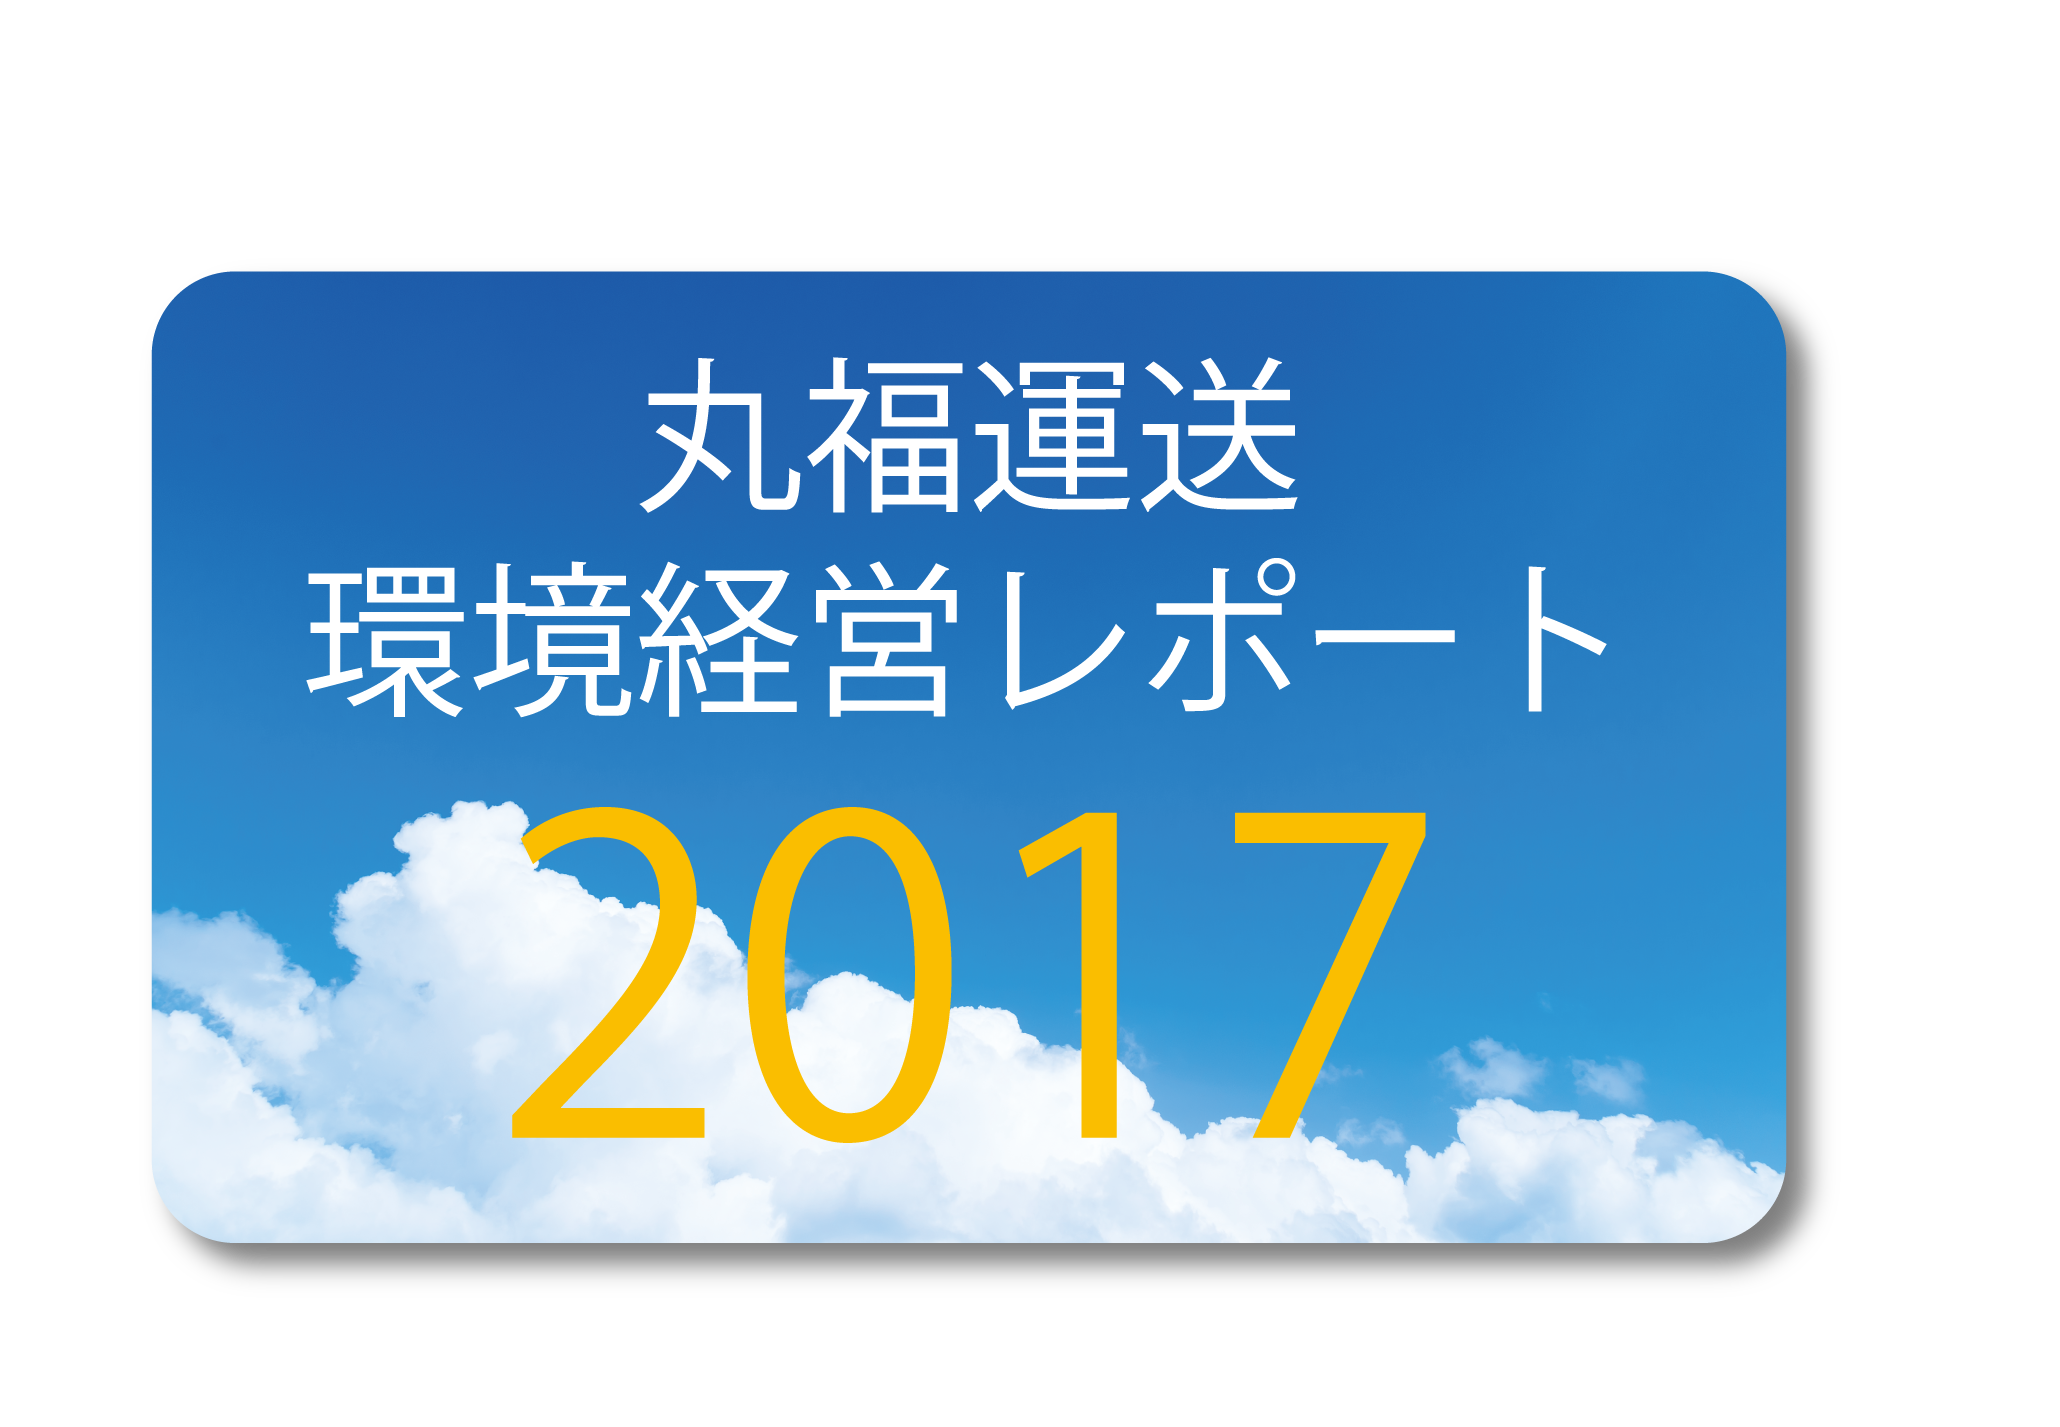 丸福運送環境経営レポート2017